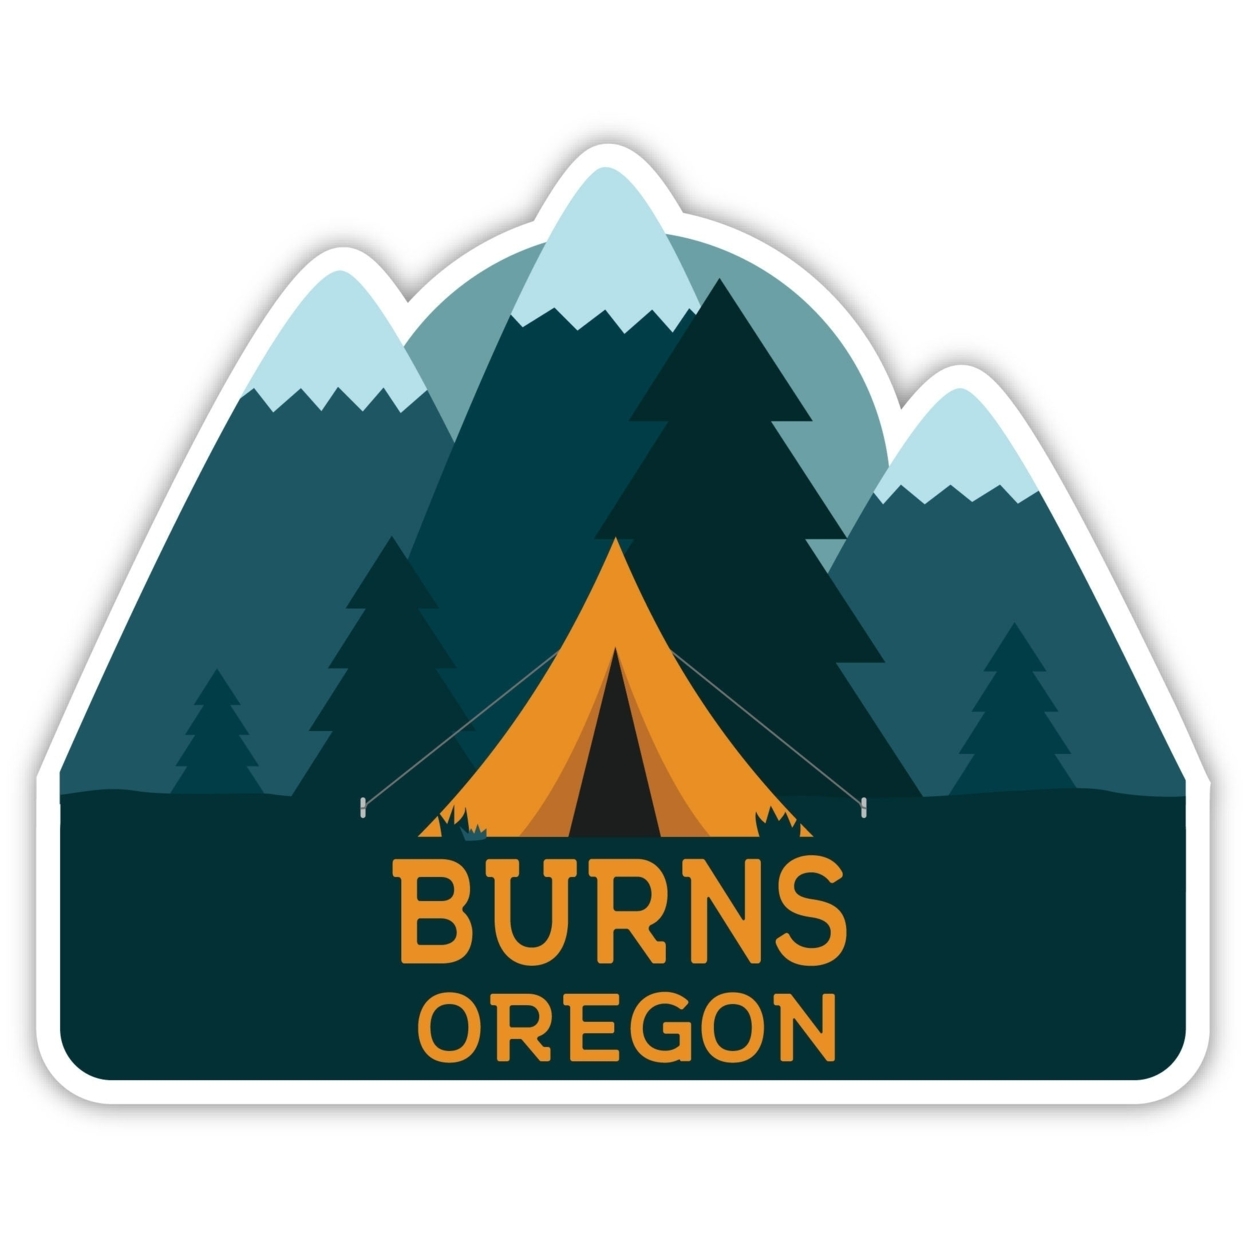 Burns Oregon Souvenir Decorative Stickers (Choose Theme And Size) - Single Unit, 4-Inch, Tent